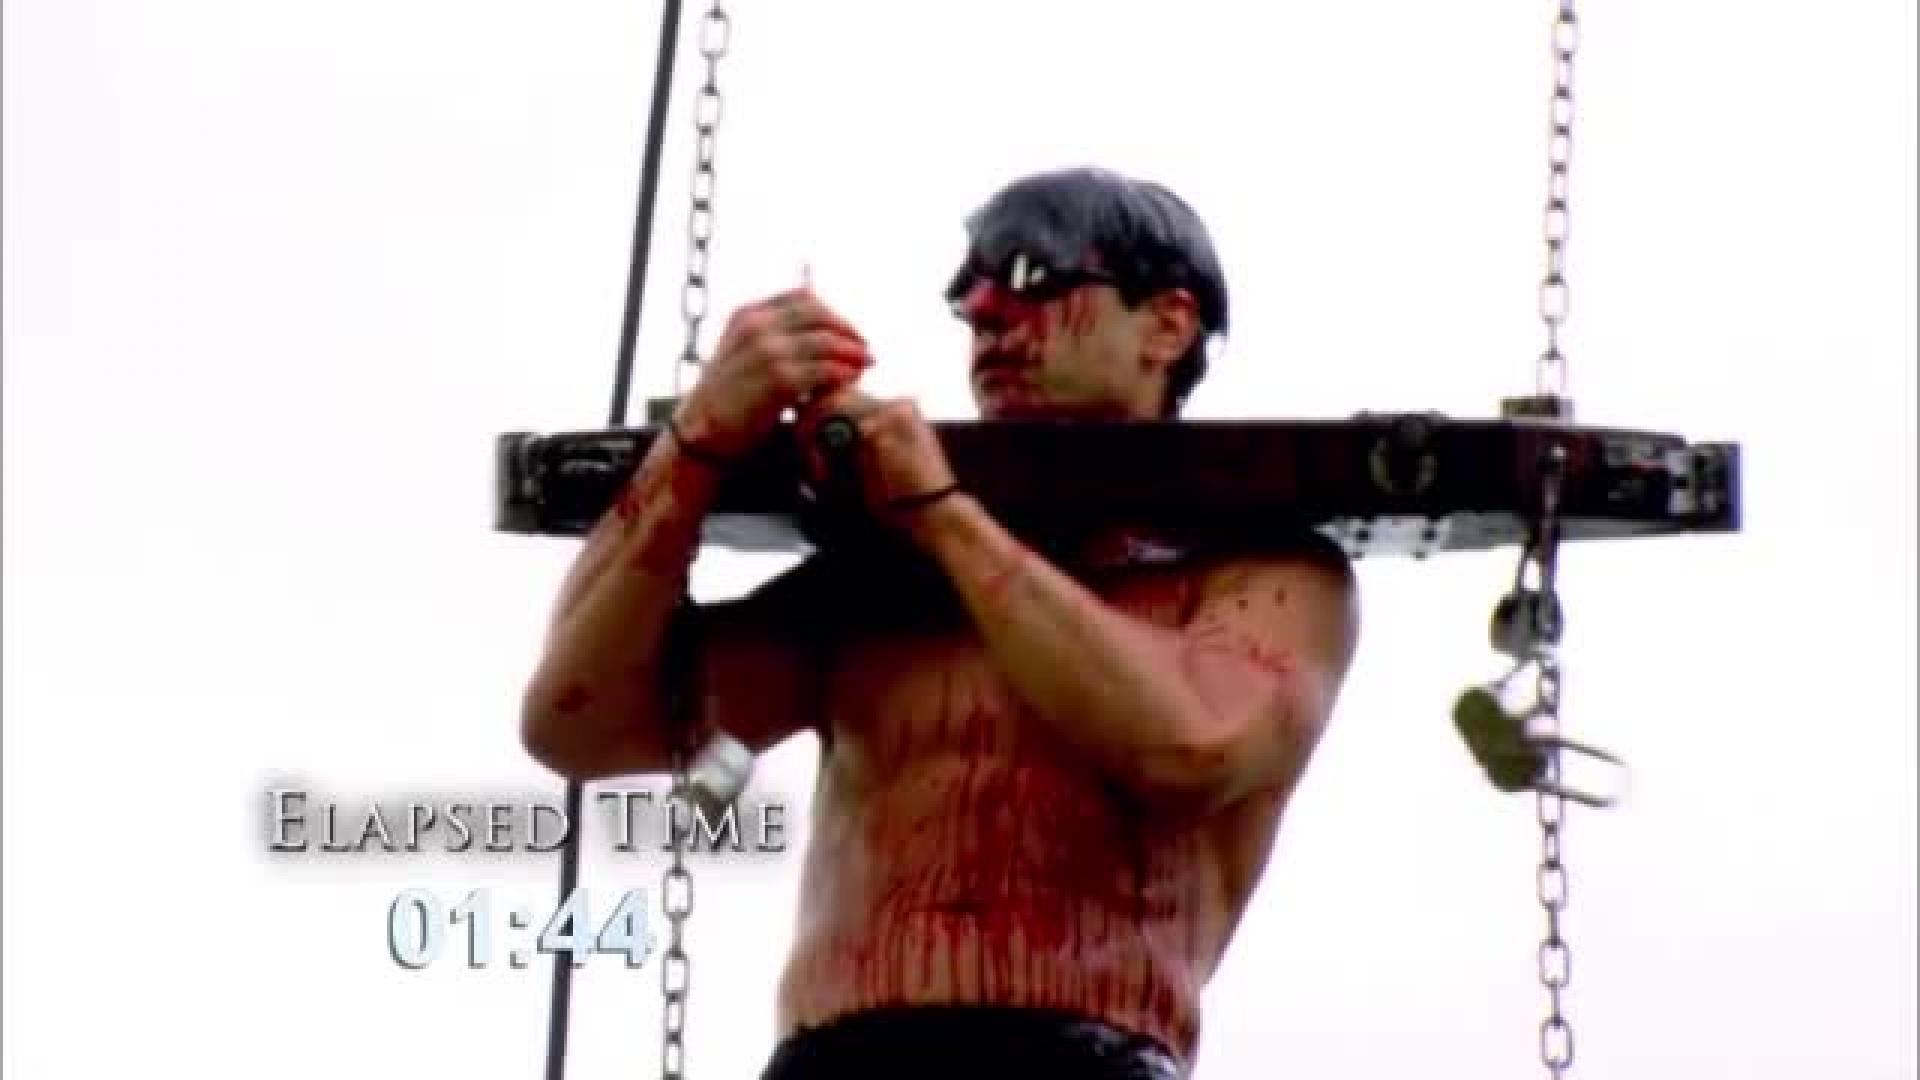 Criss Angel verisenä kahleissa alligaattorilauman yllä - avautuvatko lukot ajoissa?